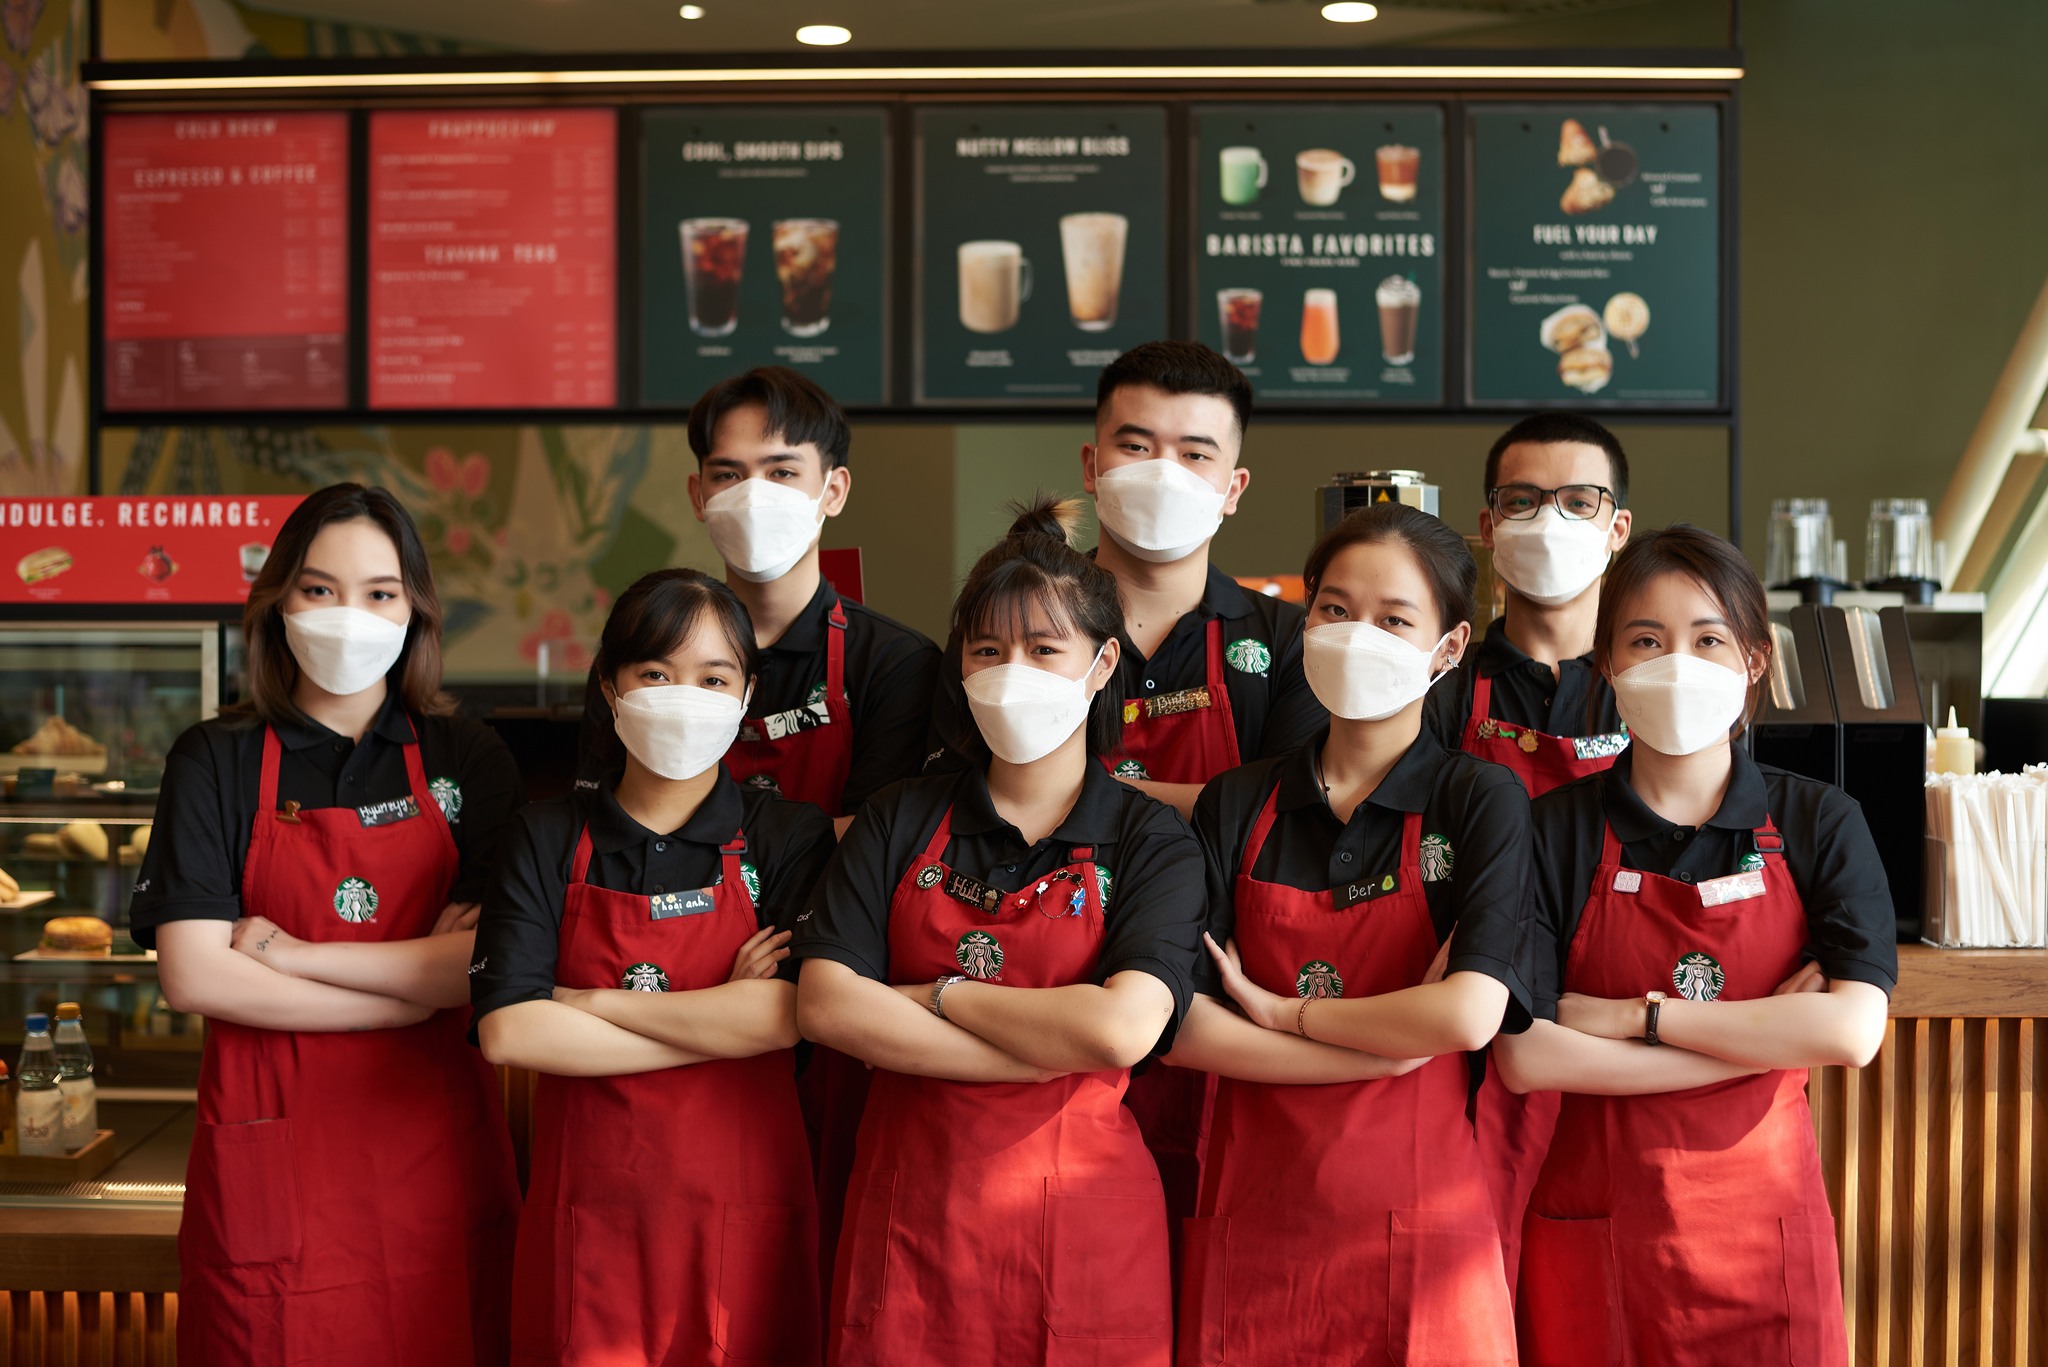 Dong phuc Starbucks03 - Đồng phục Starbucks